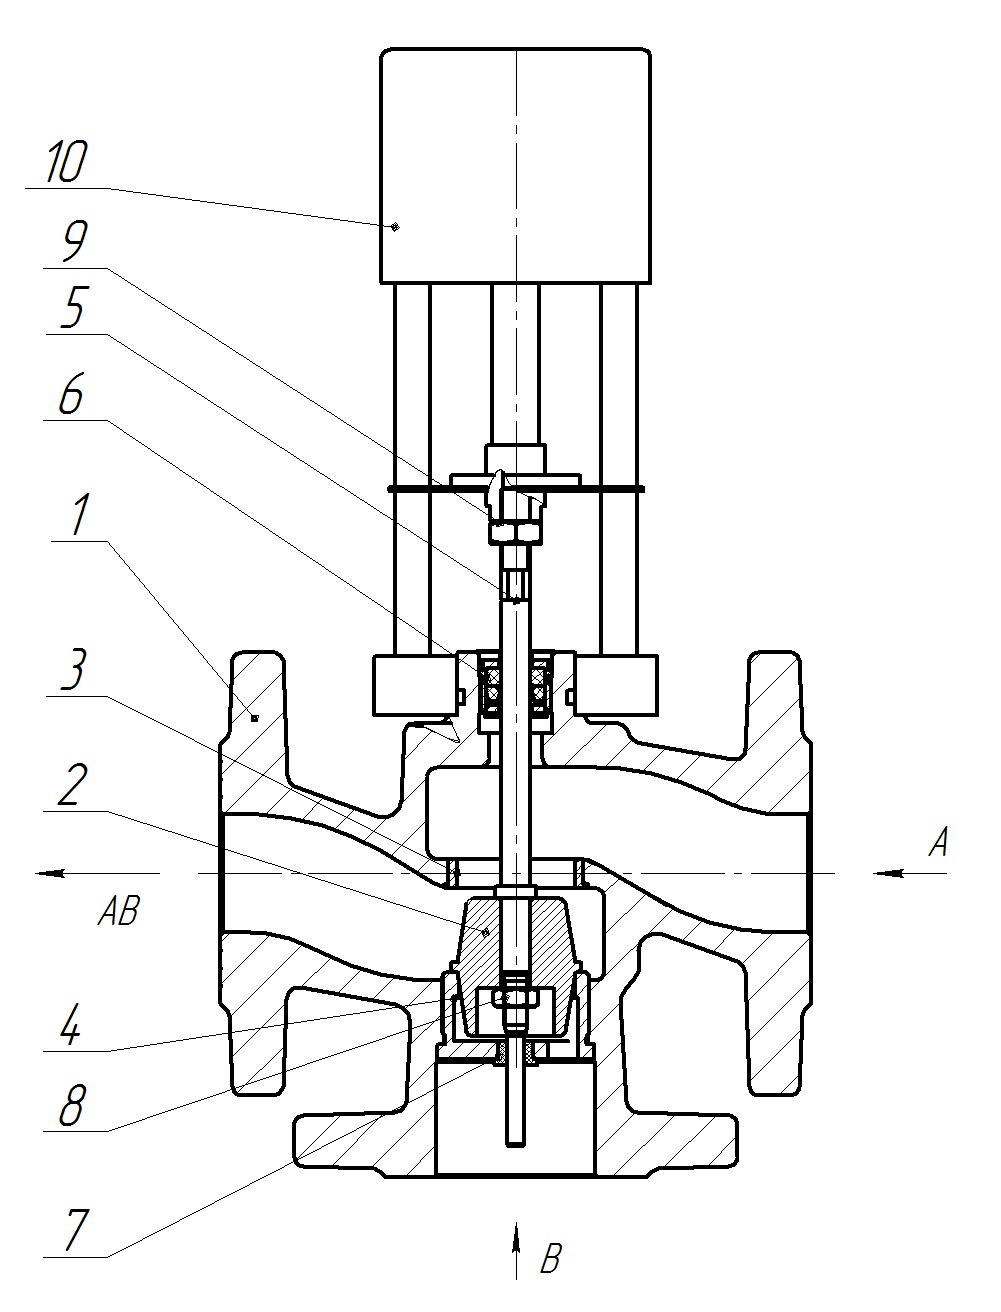 Клапан регулирующий трехходовой разделительный DN.ru 23ч901нж Ду15 Ру16 Kvs1,6 серый чугун СЧ20, фланцевый, Tmax до 150°С с электроприводом Катрабел TW-500-XD220